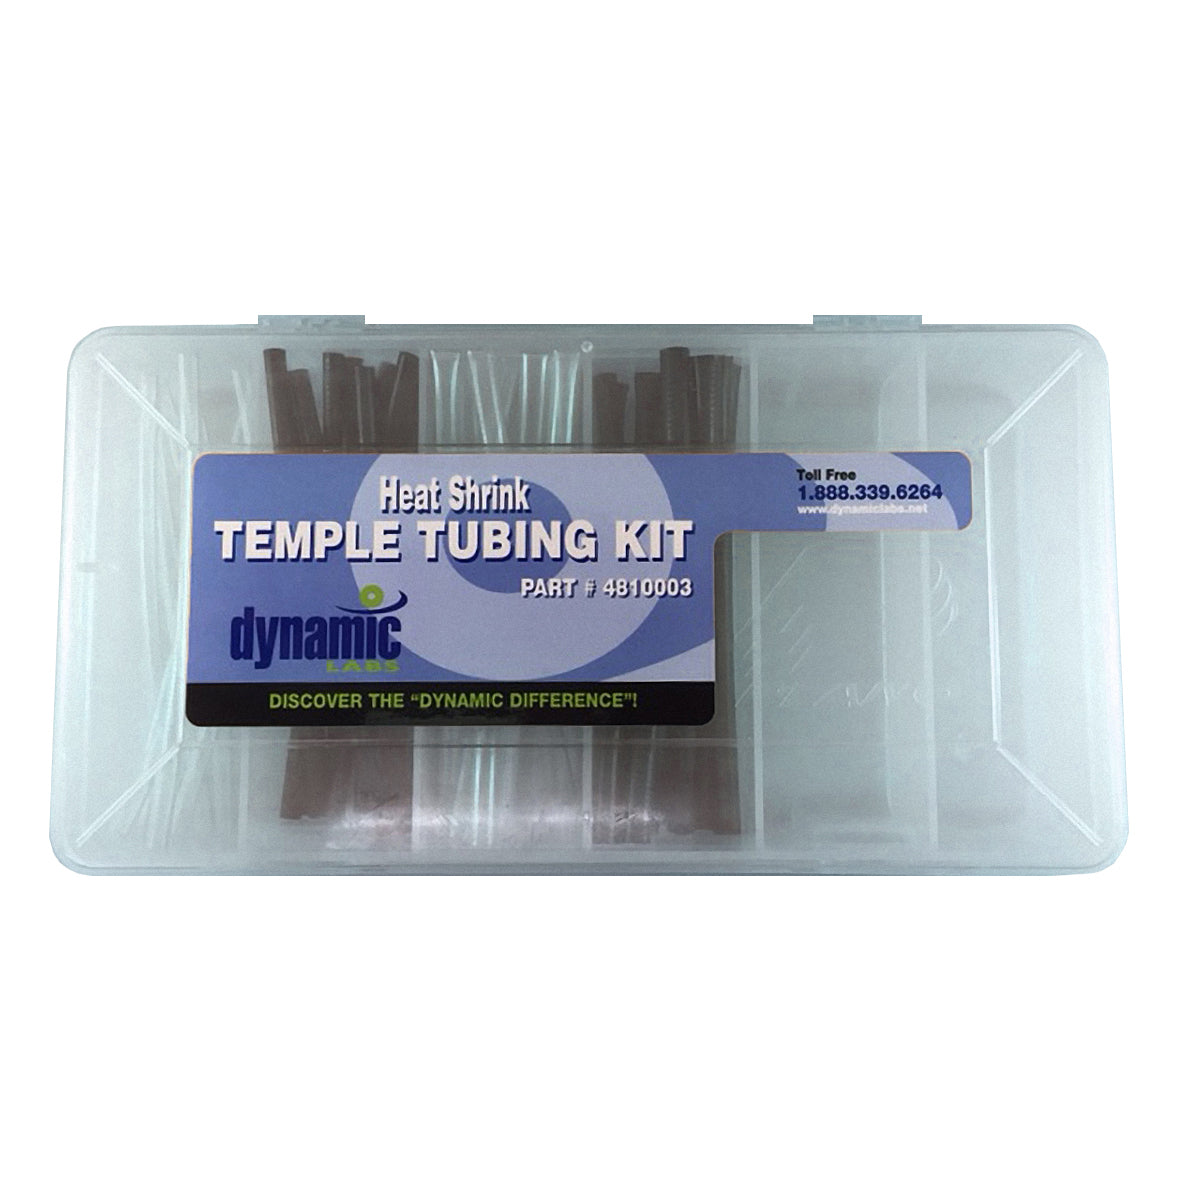 Heat Shrink Temple Tubing Kit